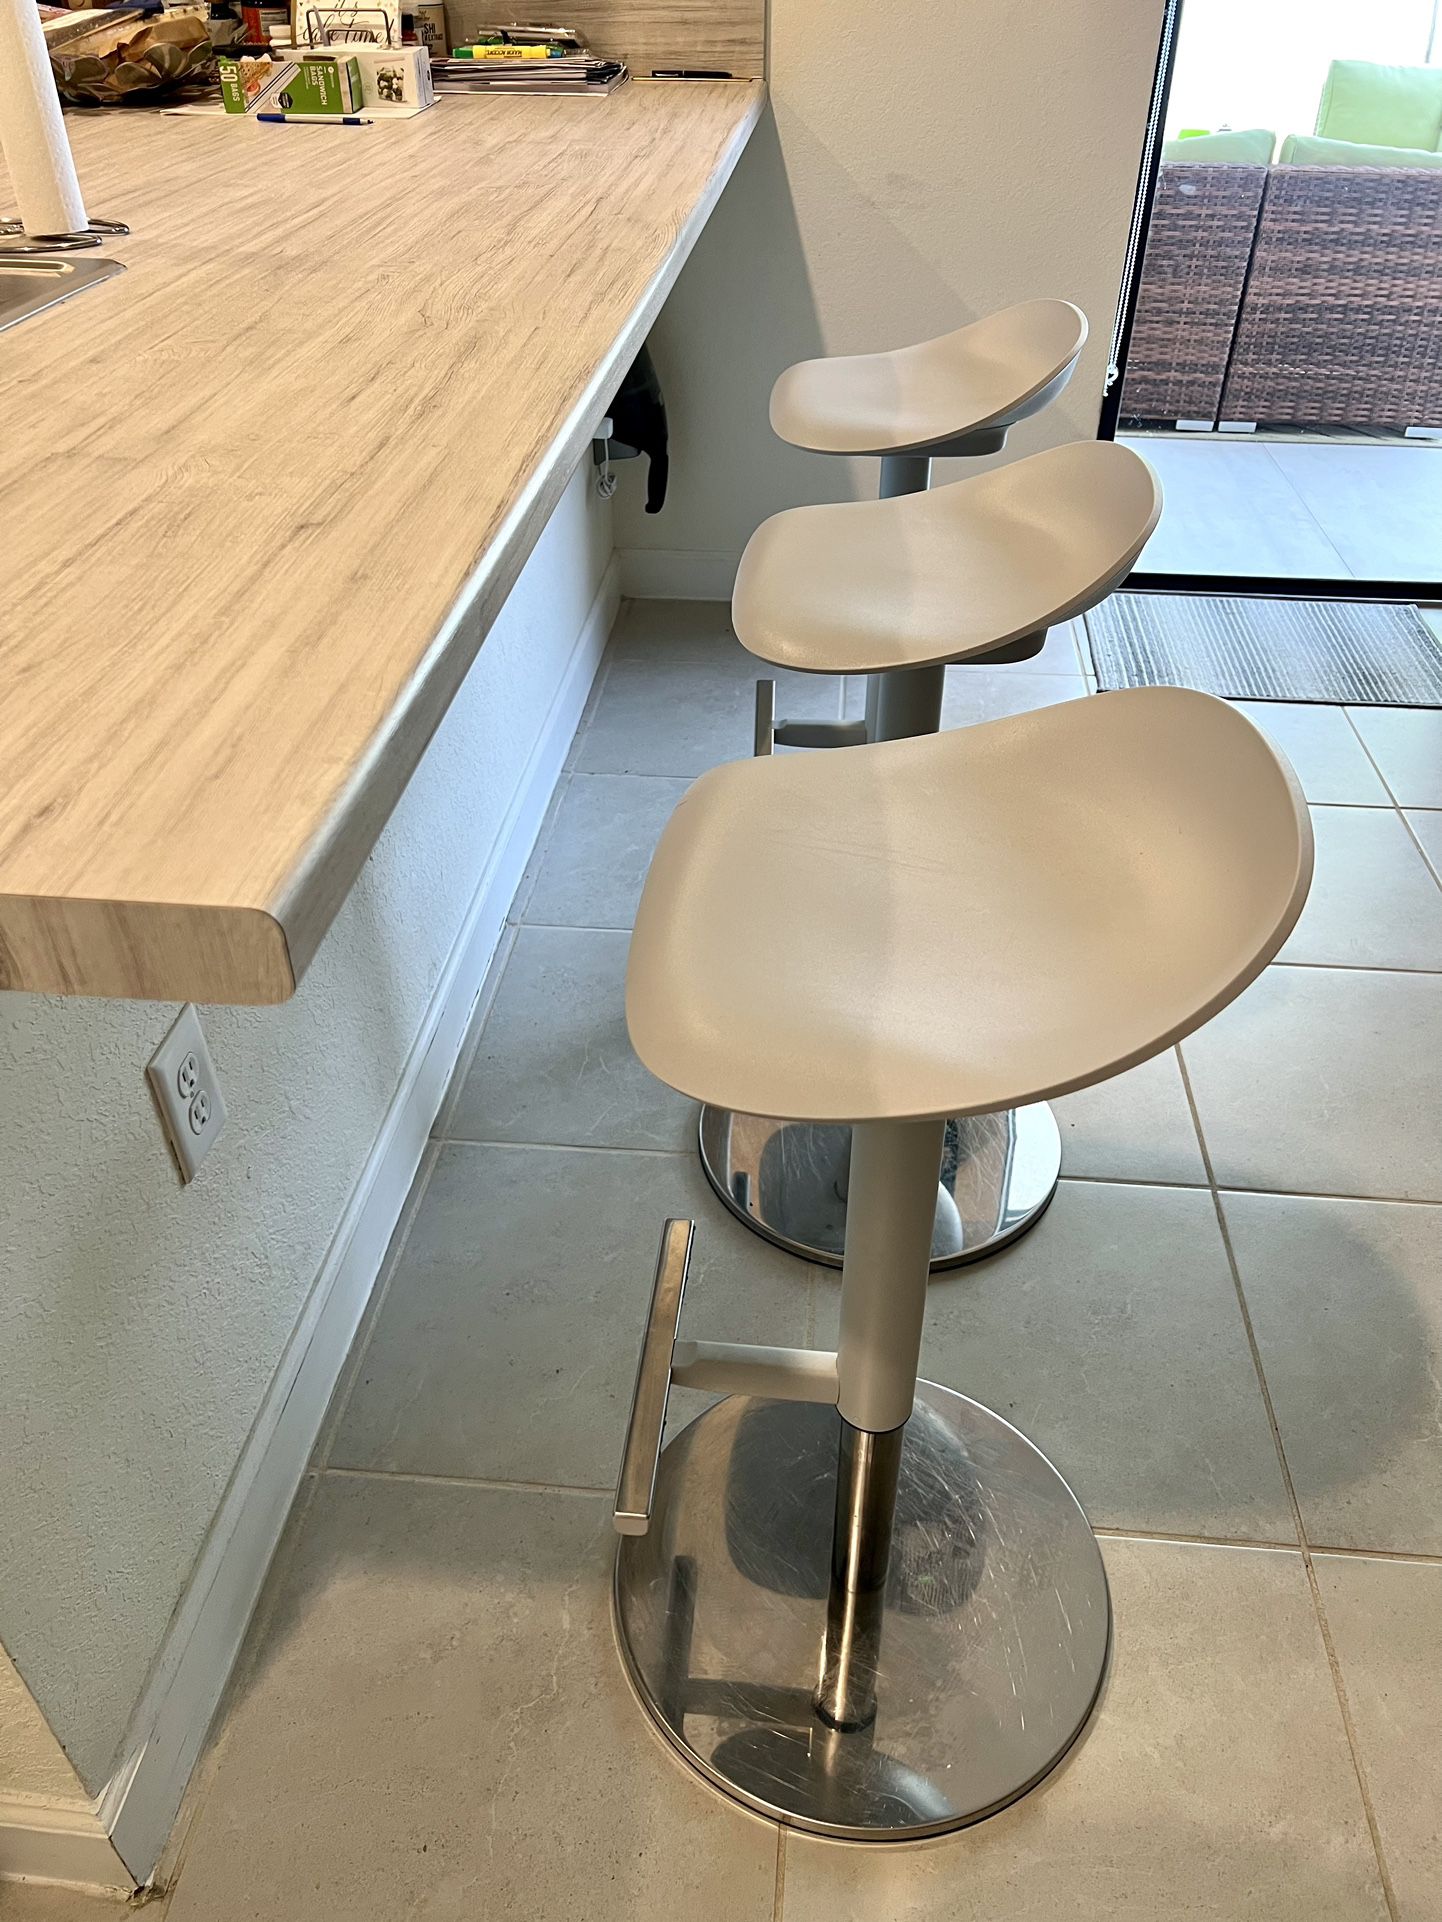 IKEA JANINGE Bar stools